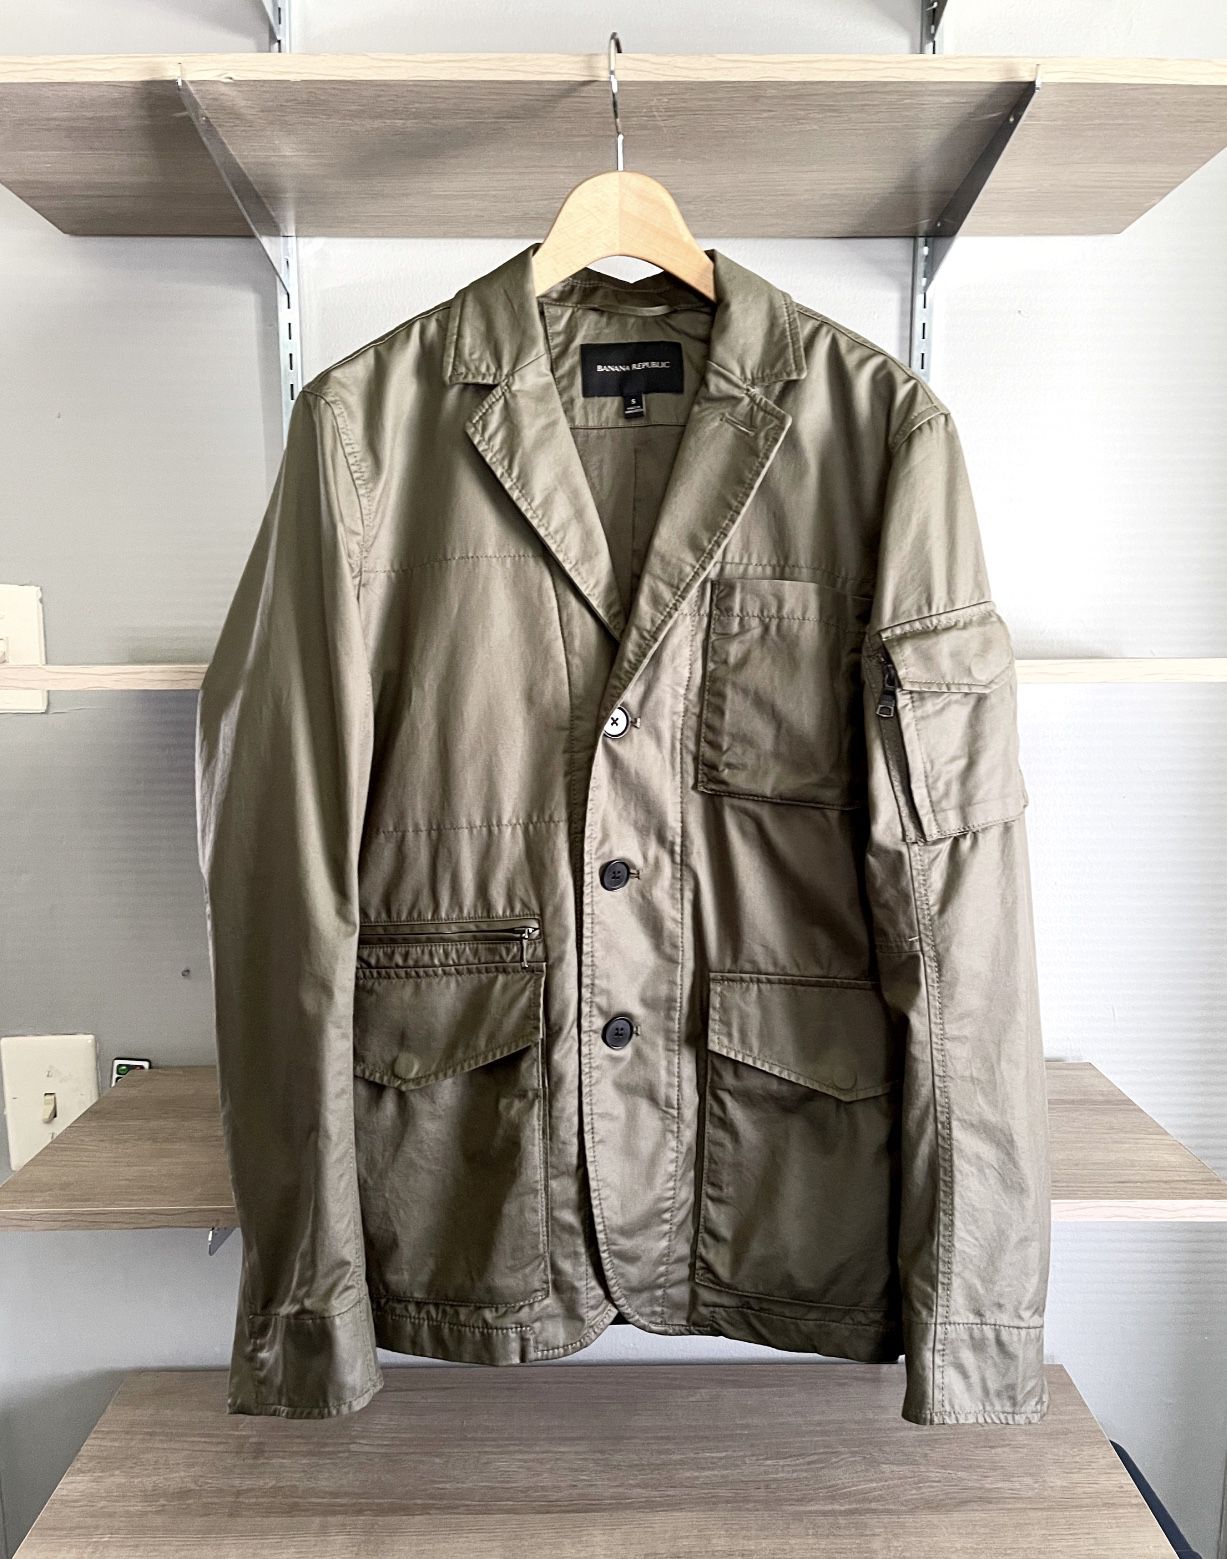 New! Men’s Banana Republic military style blazer Retail $120 Size S. Army green very stylish blazer/jacket.